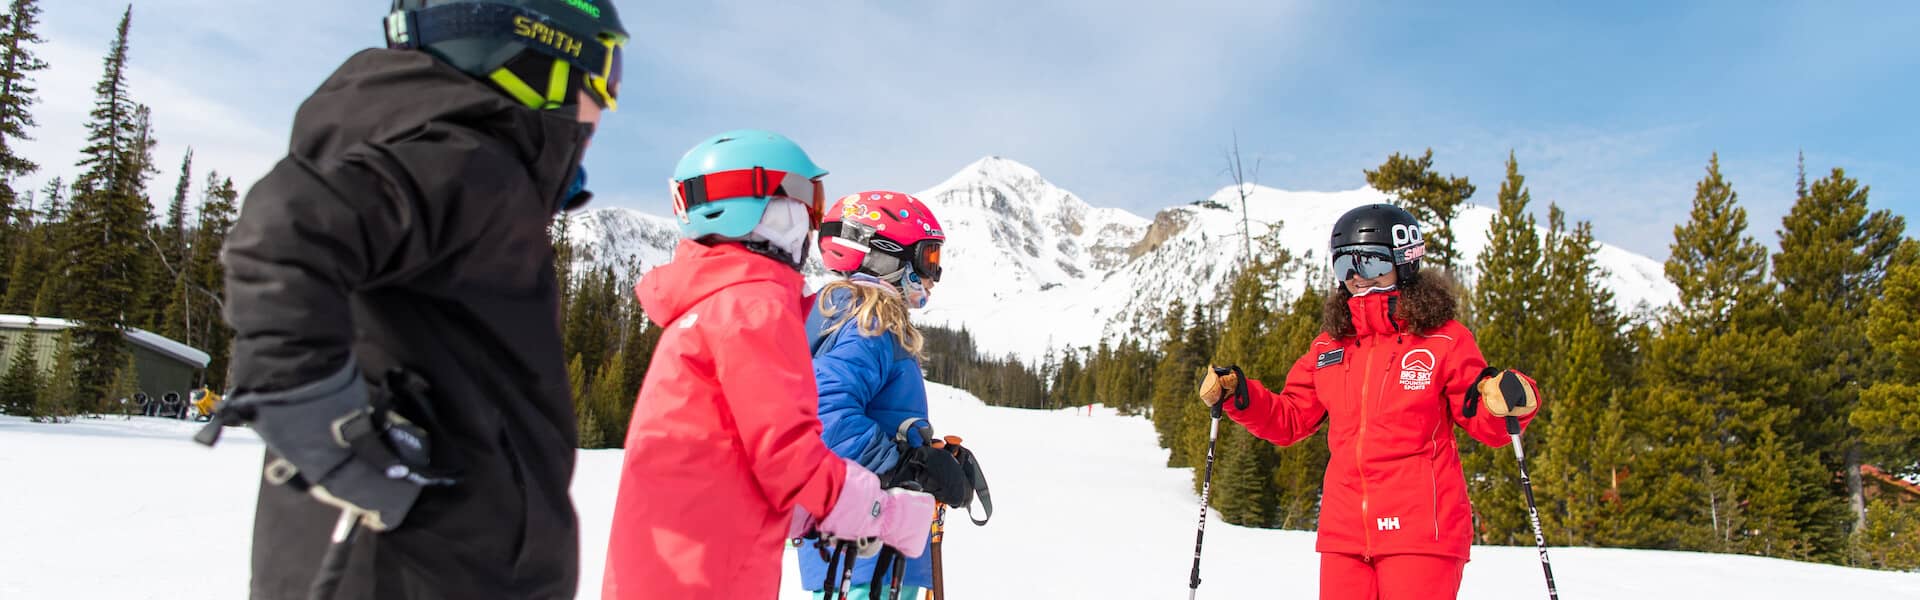 Kids and ski instructor